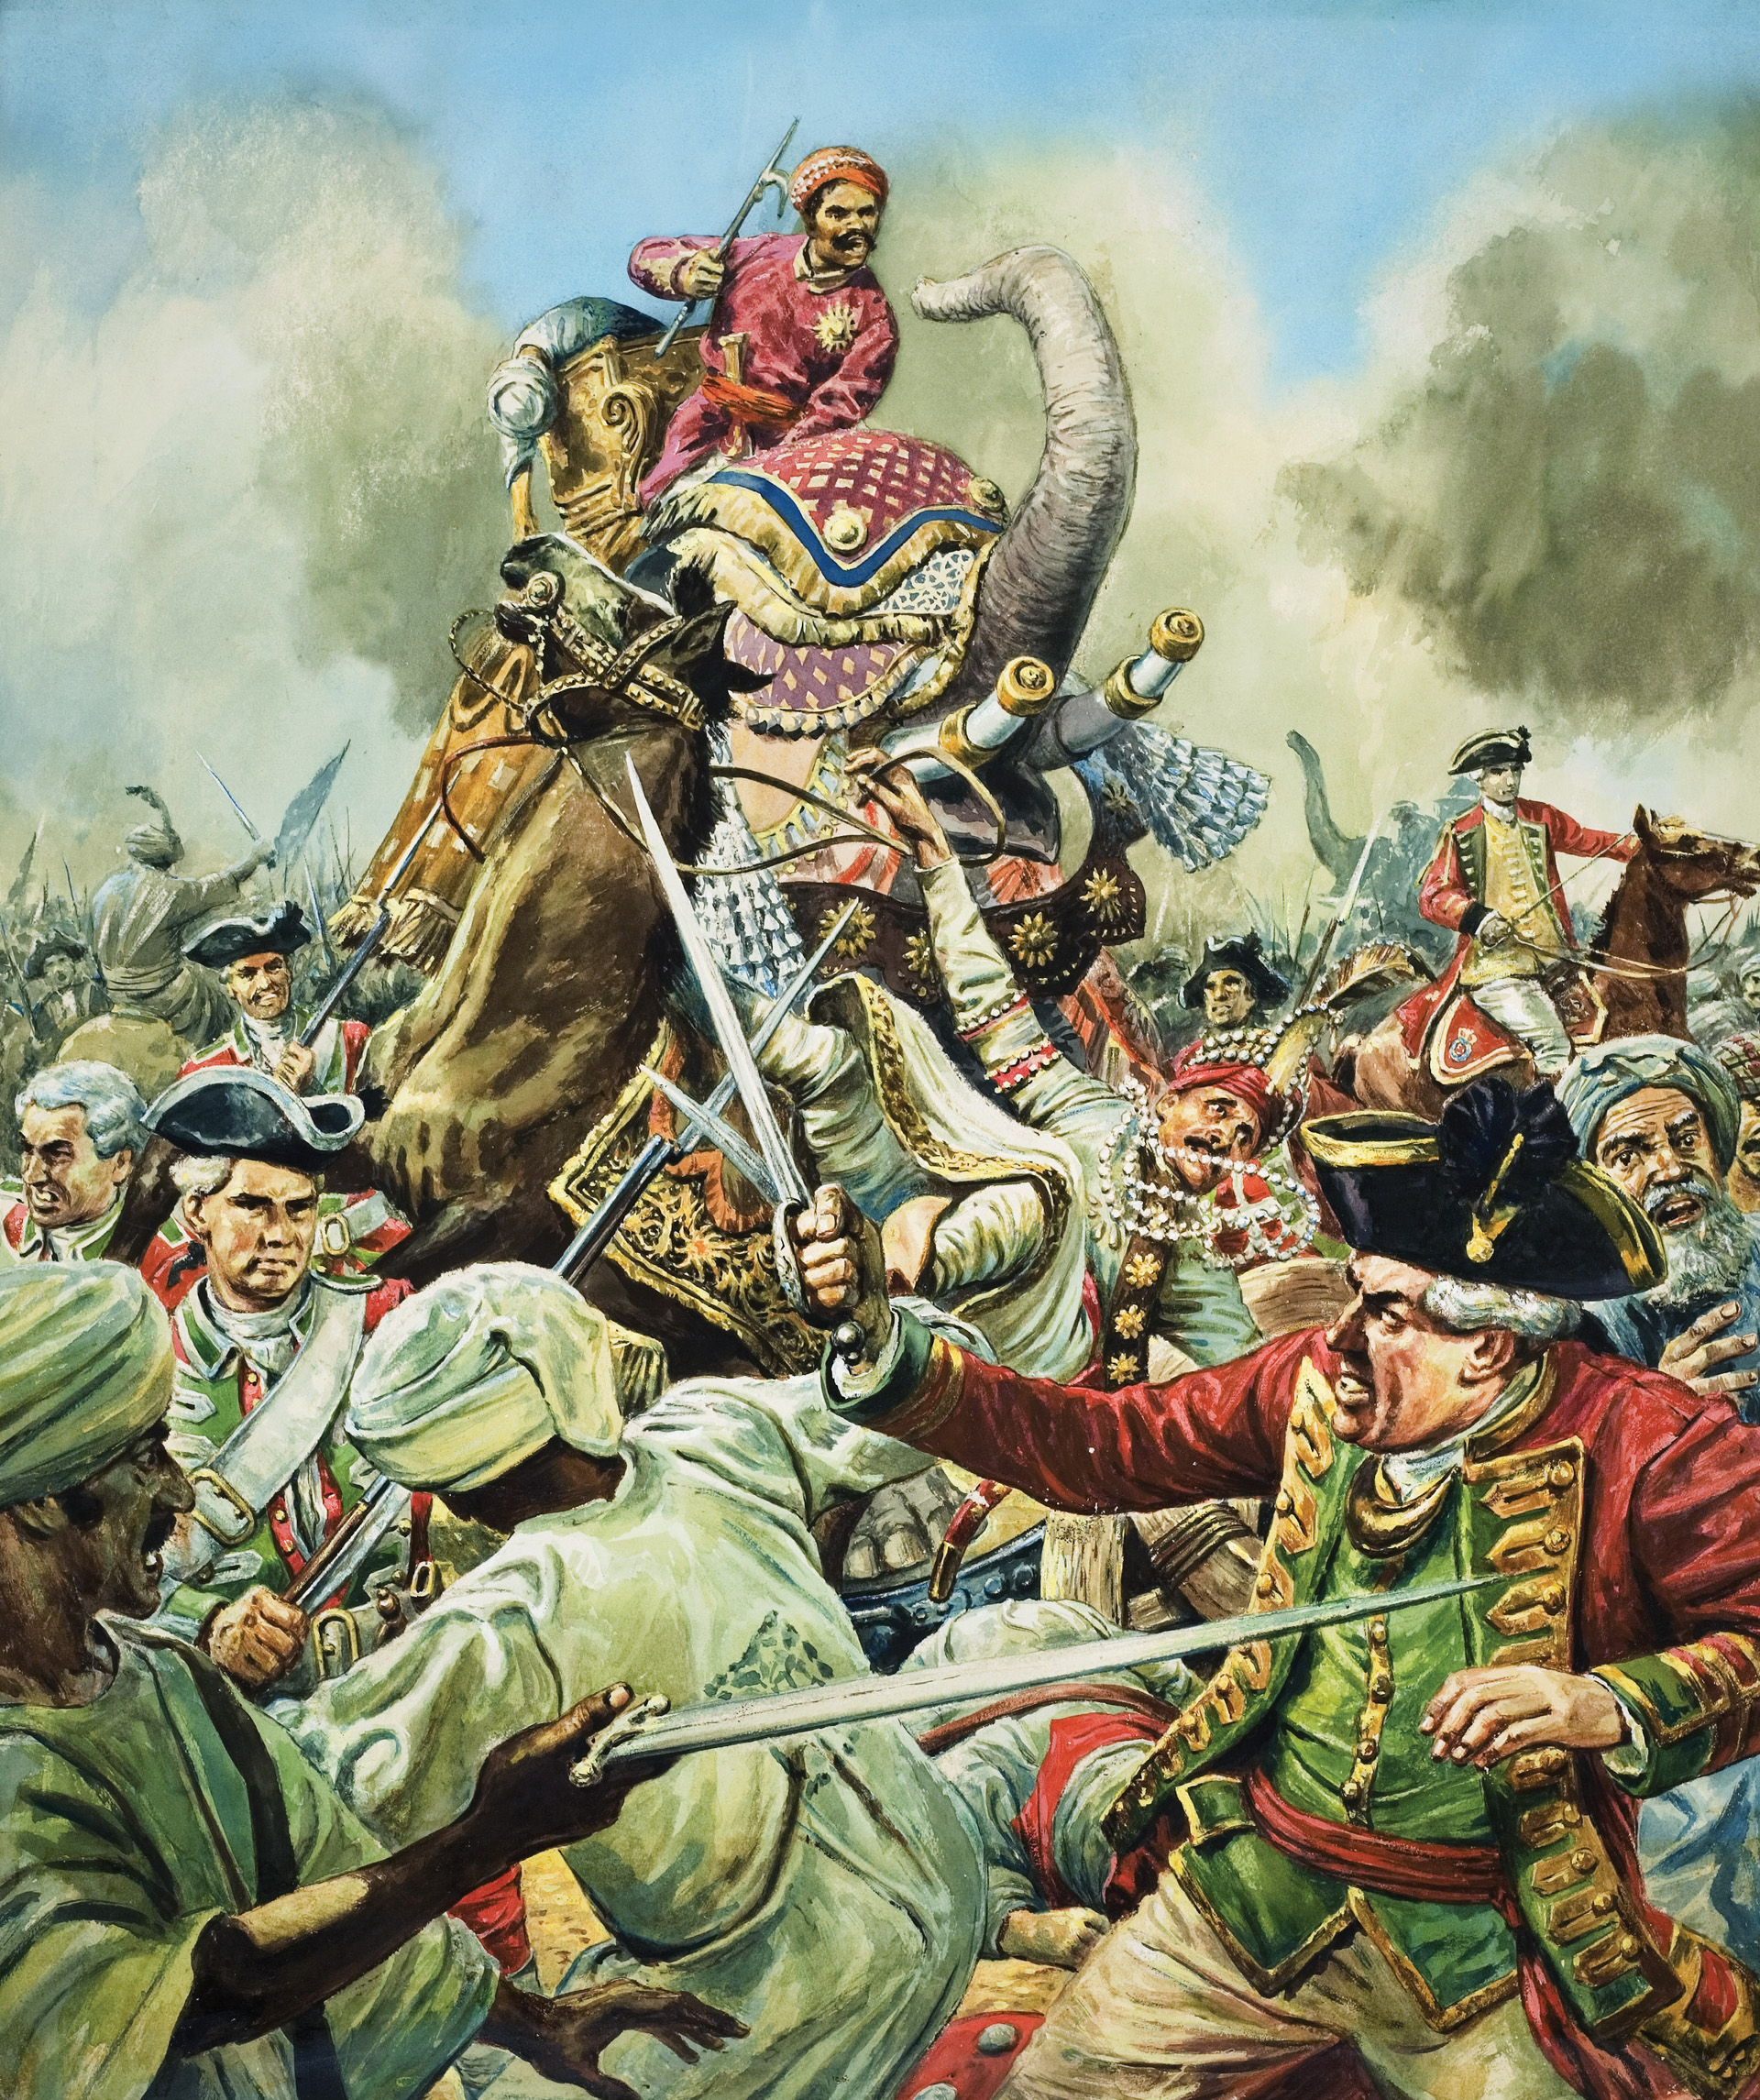 Британские колониальные захваты в индии. Битва при Плесси в 1757 году. Битва при Плесси 1757 Роберт Клайв. Колонизация Индии англичанами 19 век. Сражение при Плесси 1757.